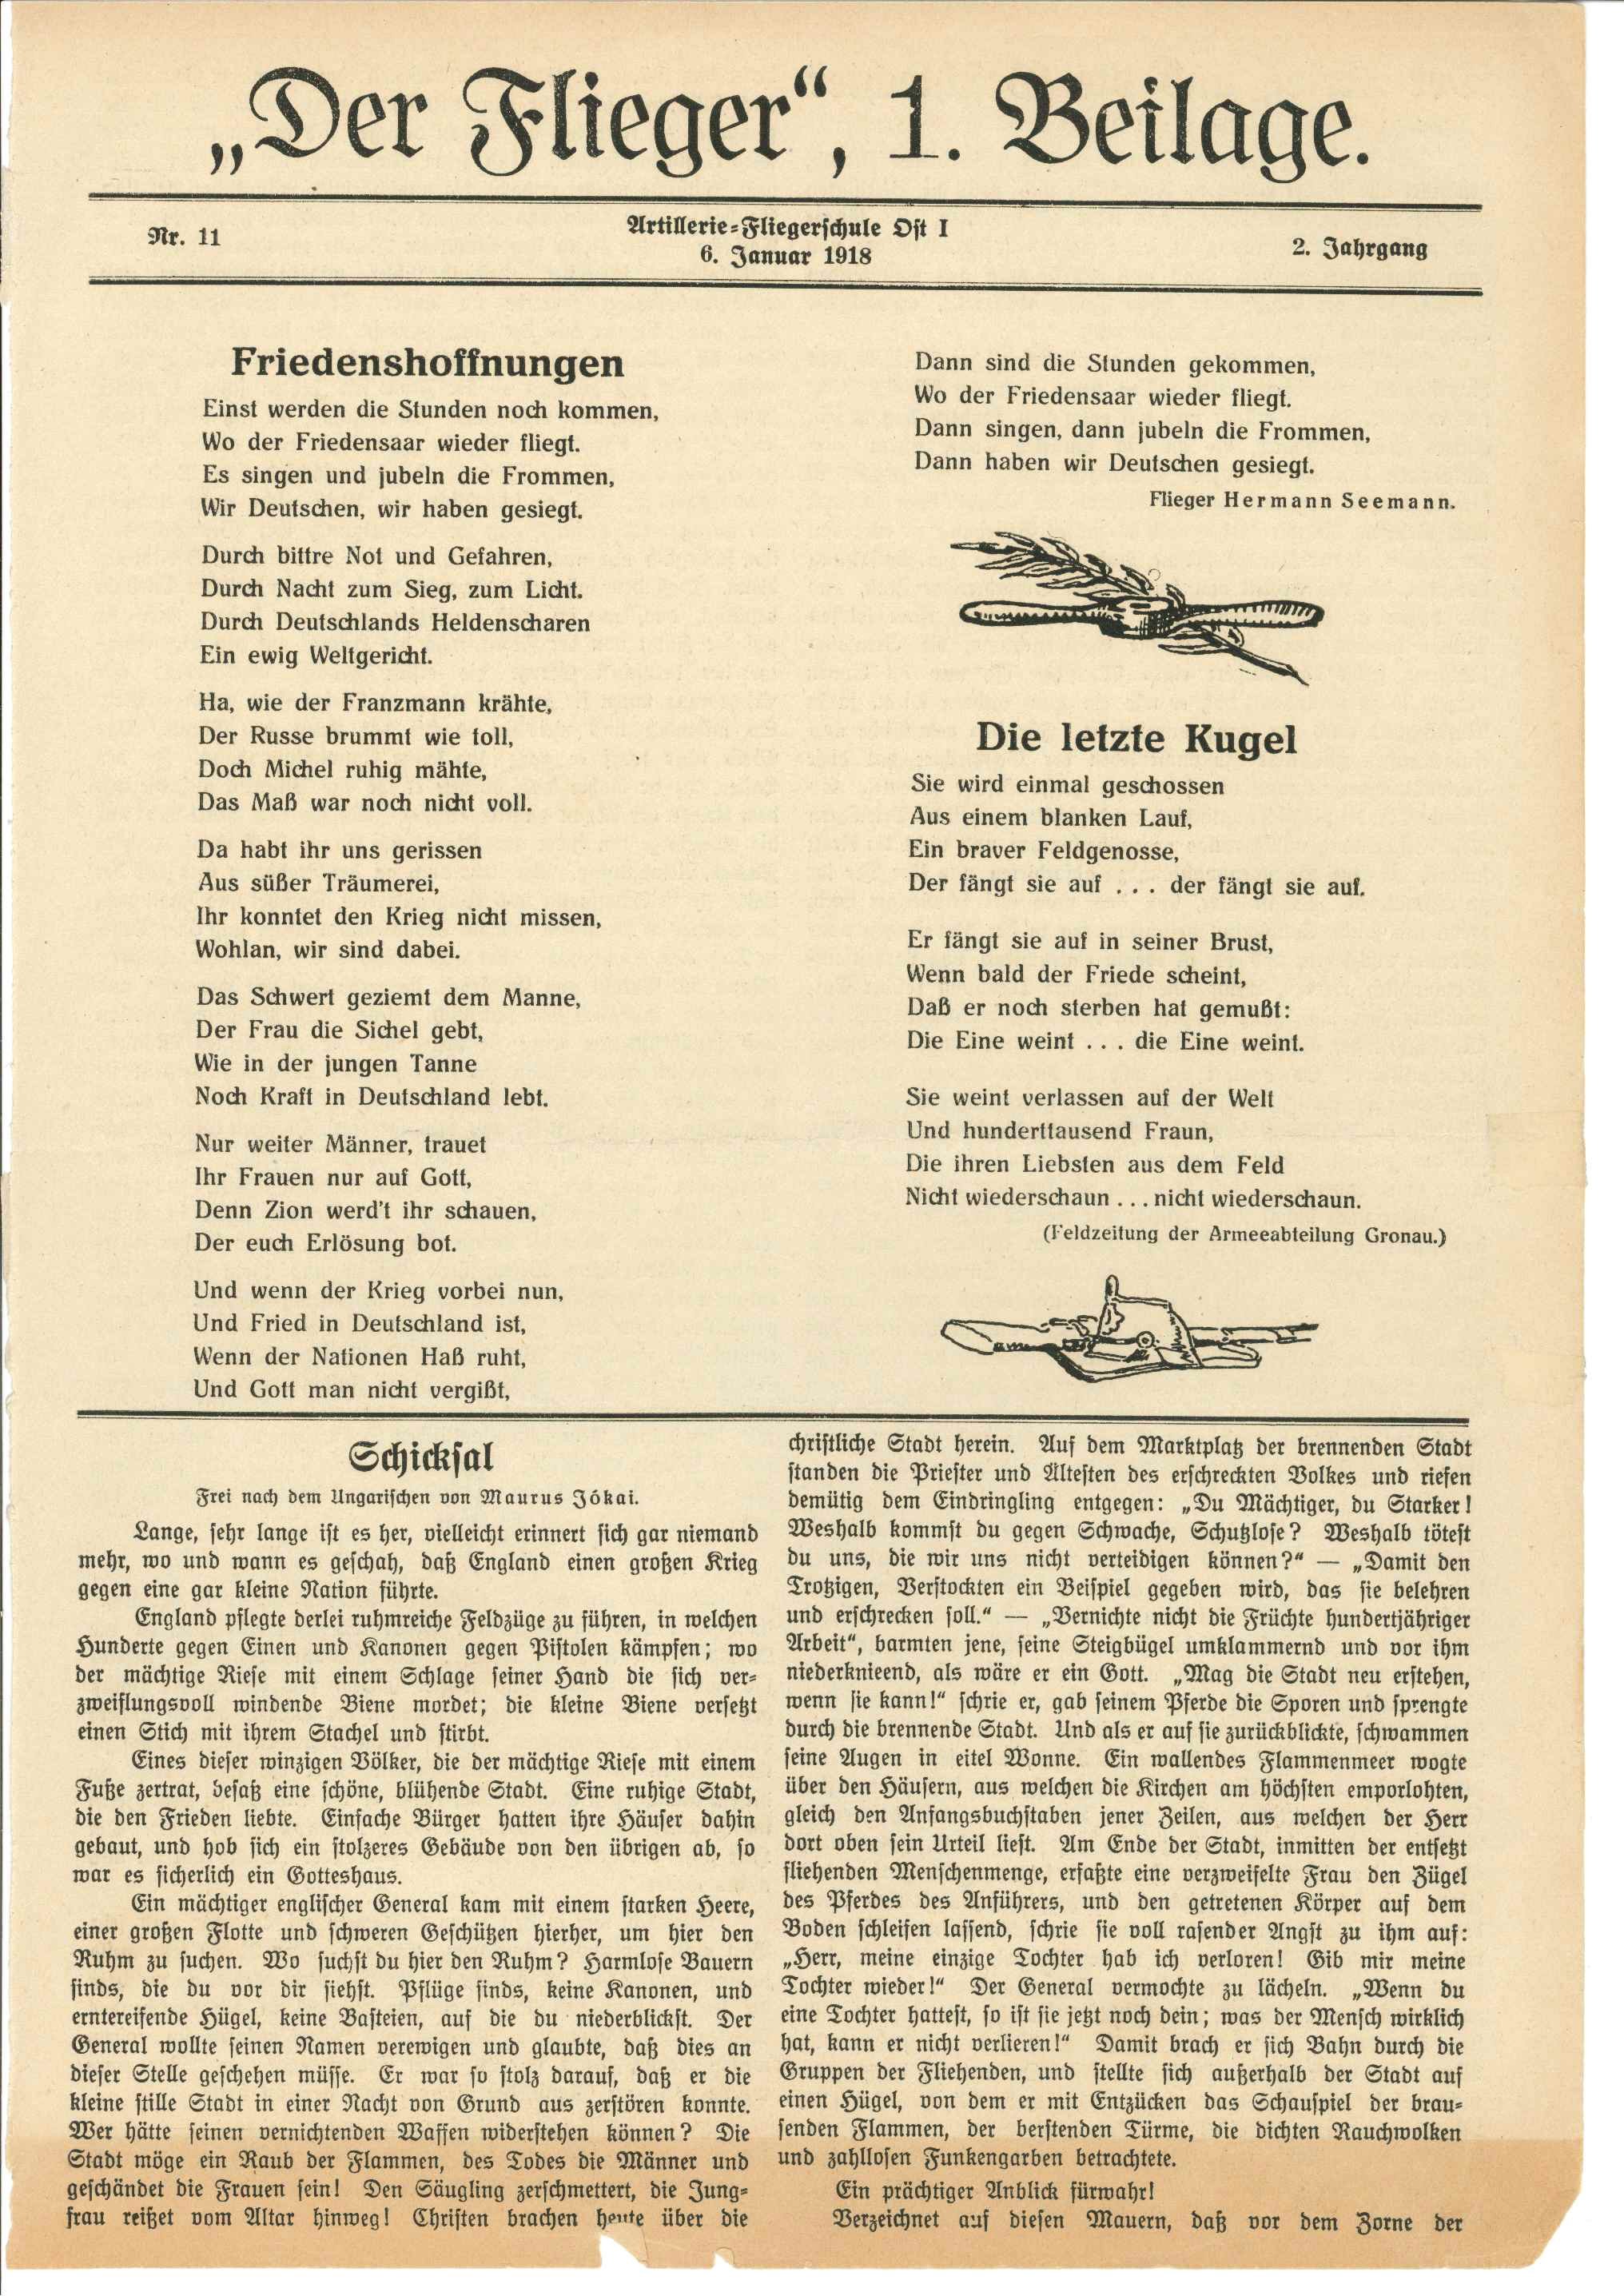 "Der Flieger", 6.1.1918 (Kurt Tucholsky Literaturmuseum CC BY-NC-SA)